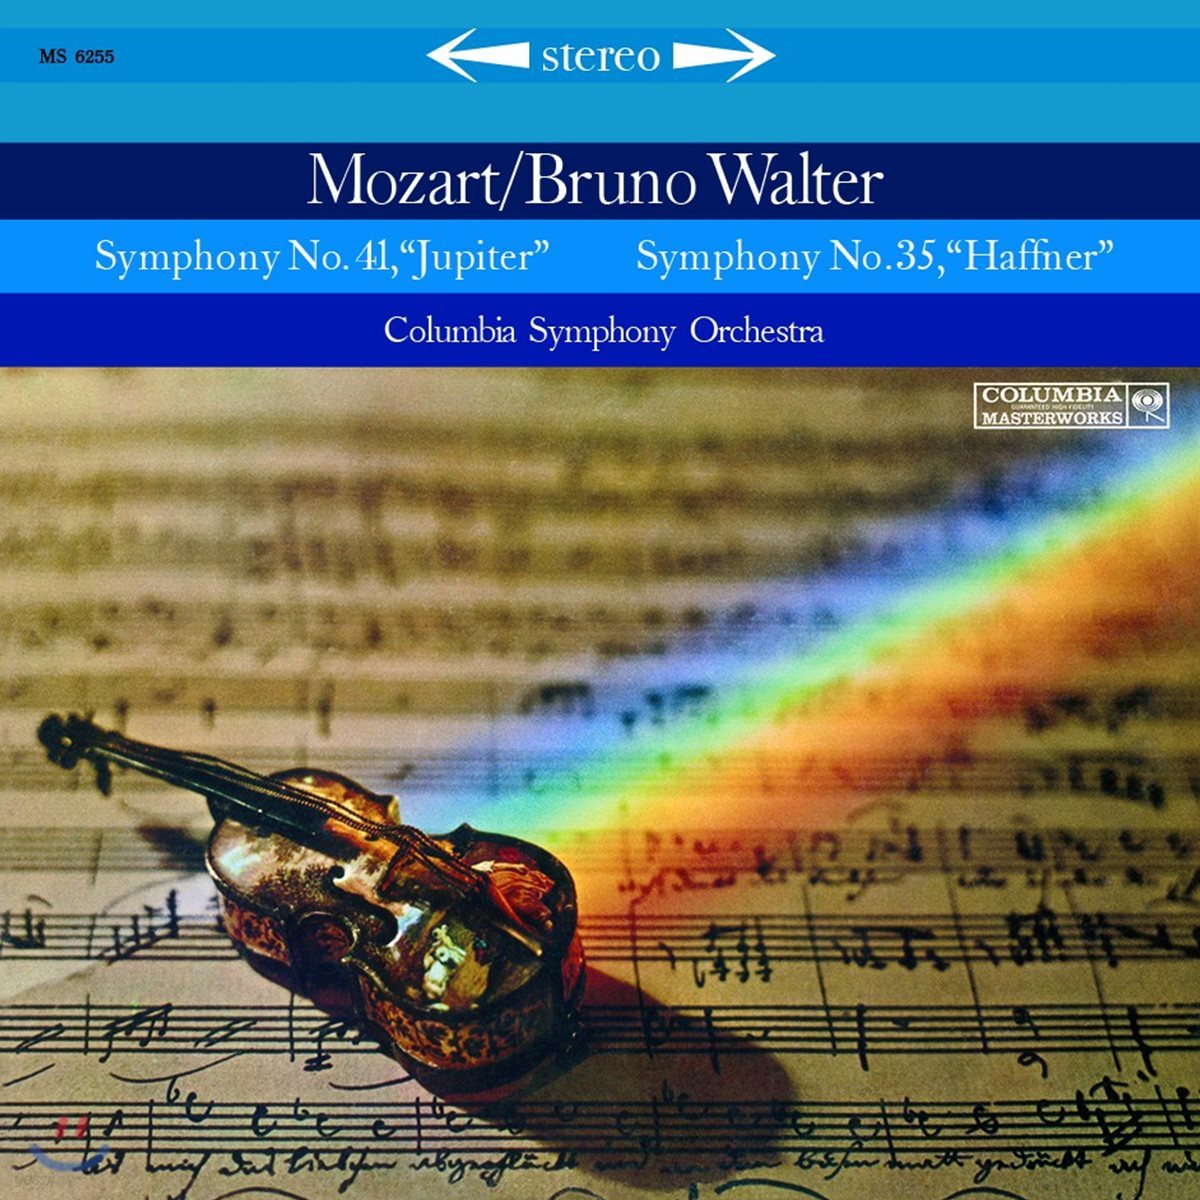 Bruno Walter 모차르트: 교향곡 35번 '하프너', 41번 '주피터' (Mozart: Symphony K.385 'Haffner', K.551 'Jupiter') [LP]